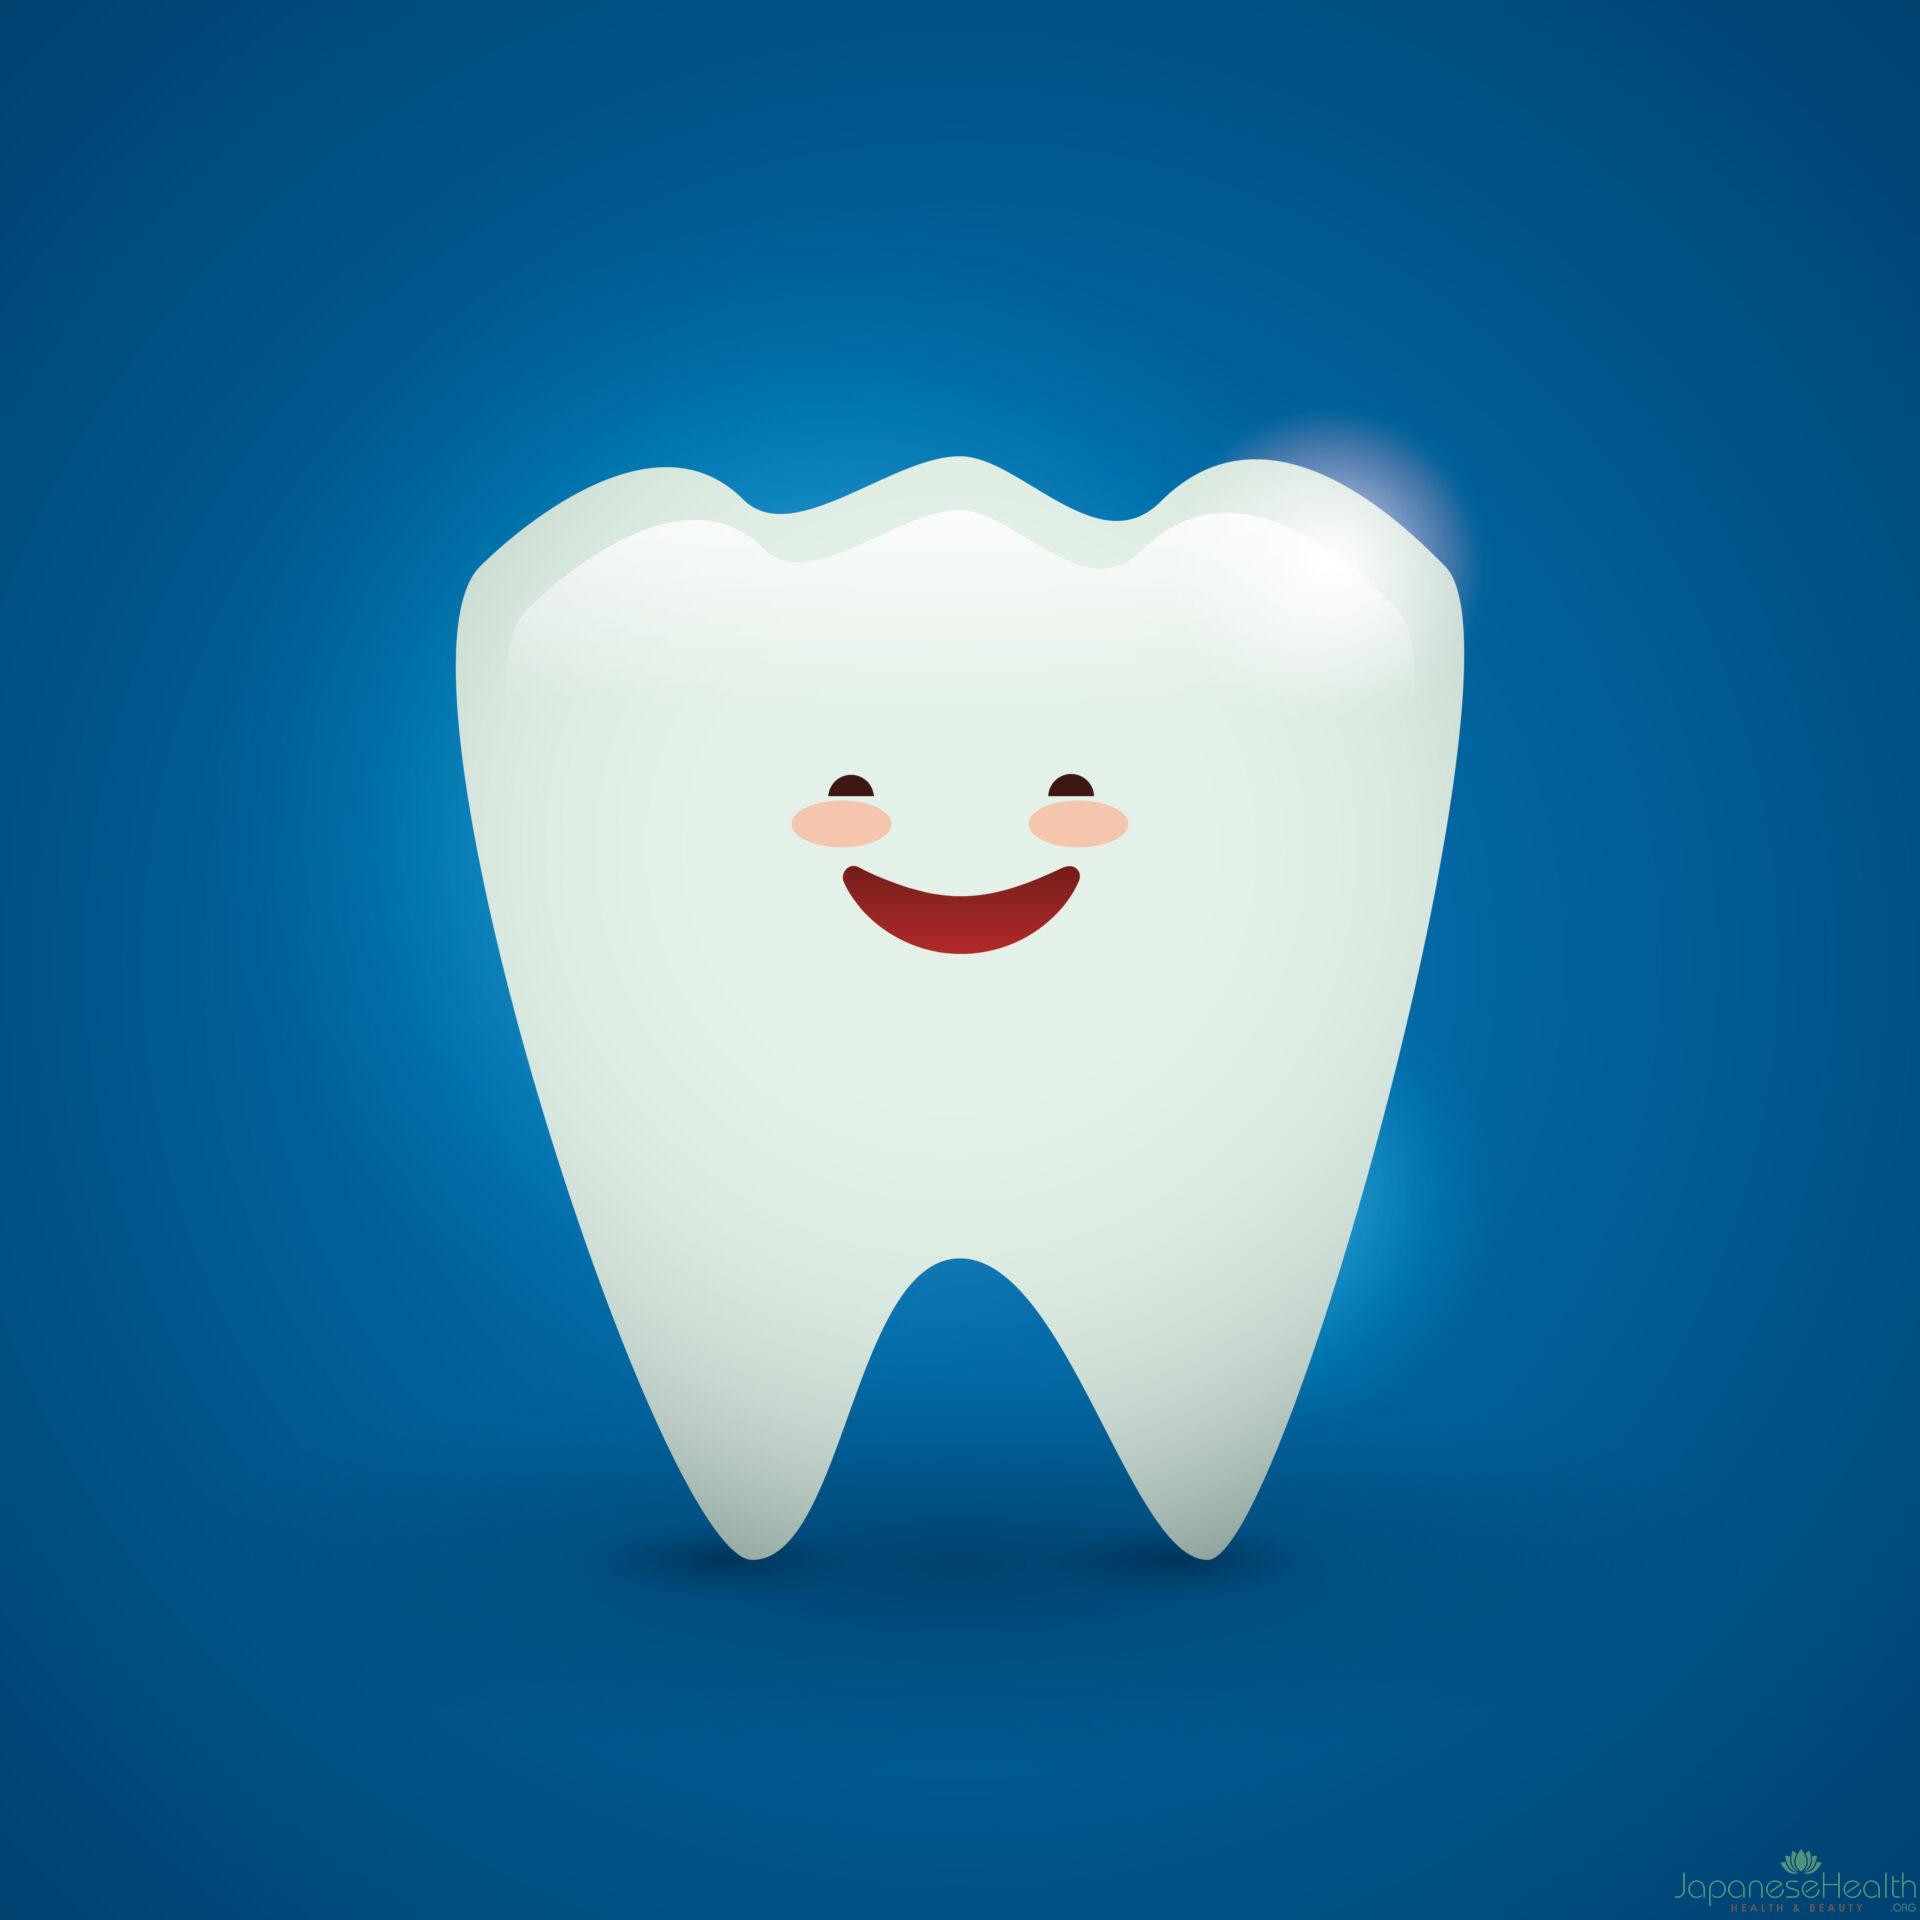 砂糖不使用のガム、特にキシリトールを含むガムは、虫歯の原因となるバクテリアの成長を抑制することで、虫歯のリスクを減らすことができます。